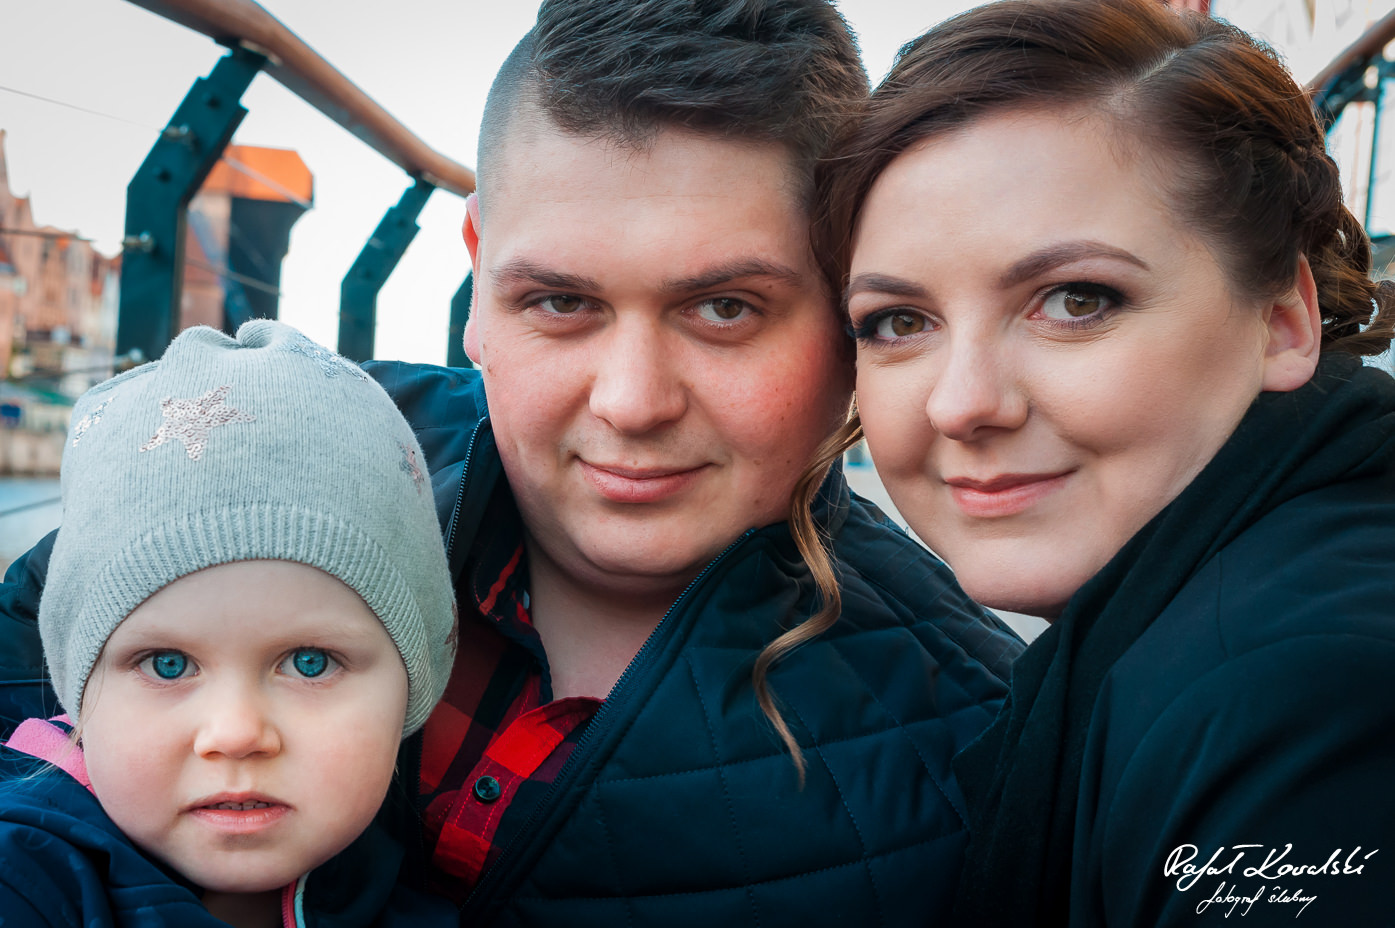 na piamiętkowej fotografii z sesji narzeczeńskiej w Gdańsku widać dumnych rodziców i ich małą córeczkę